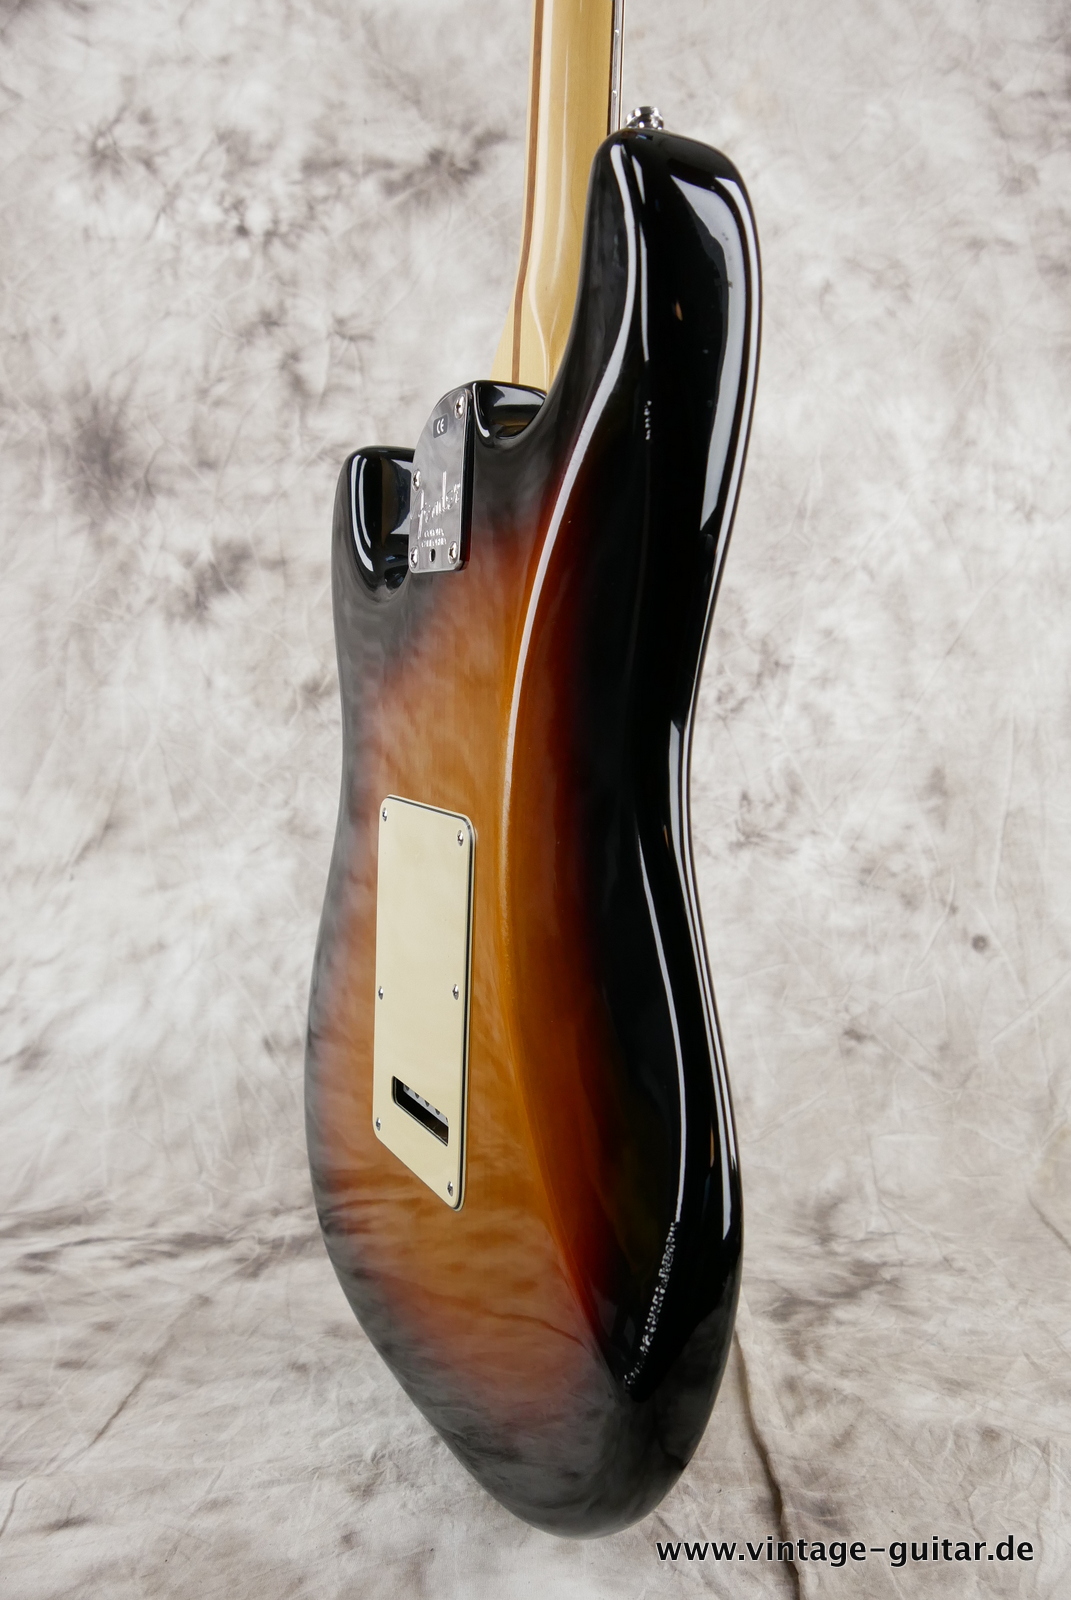 Fender_Startocaster_American_Deluxe_sunburst_samarium-cobalt-noiseless_tremolo_2005-012.JPG